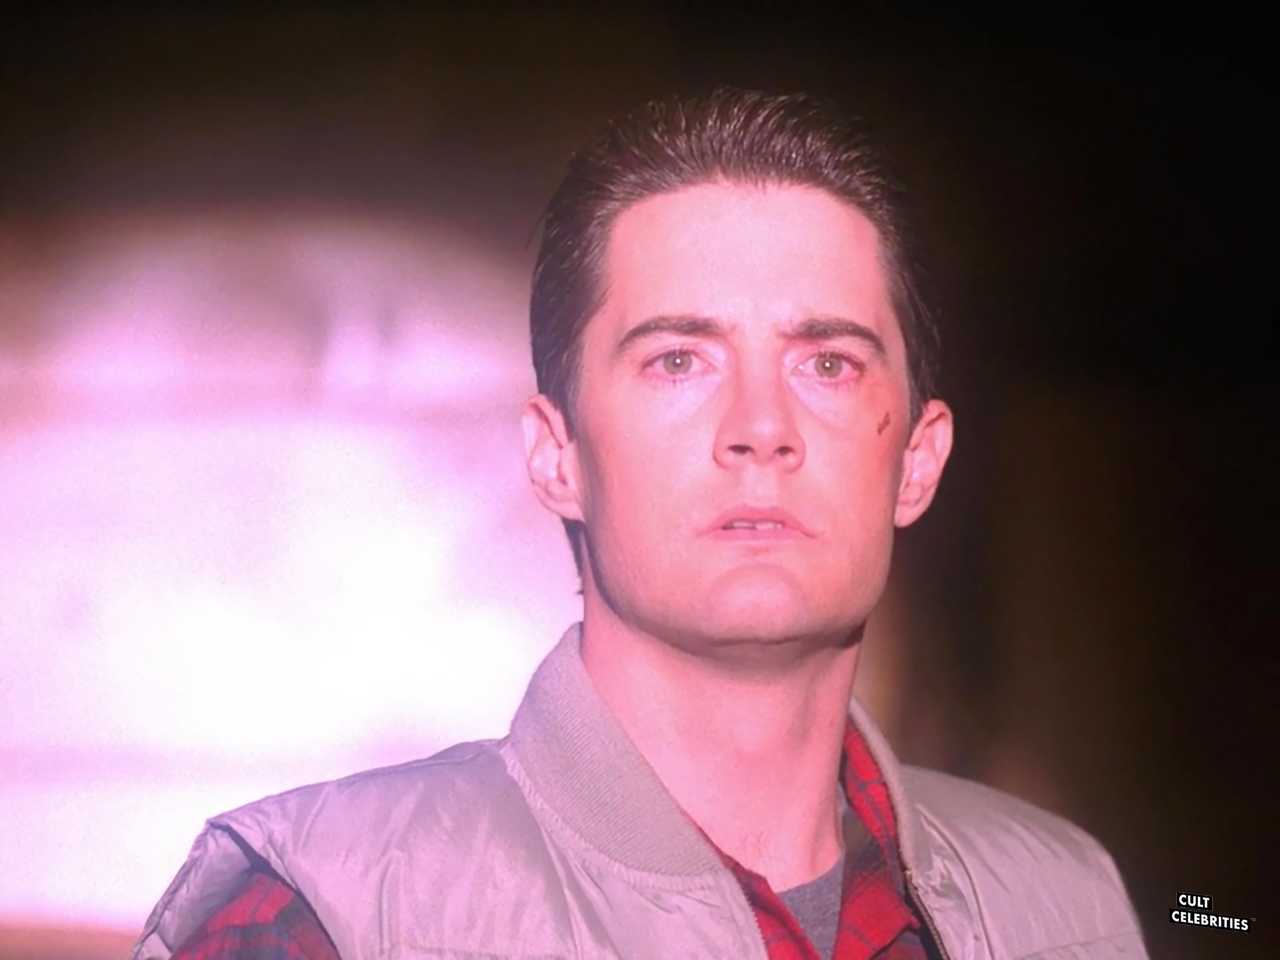 Kyle MacLachlan in Twin Peaks (1990)